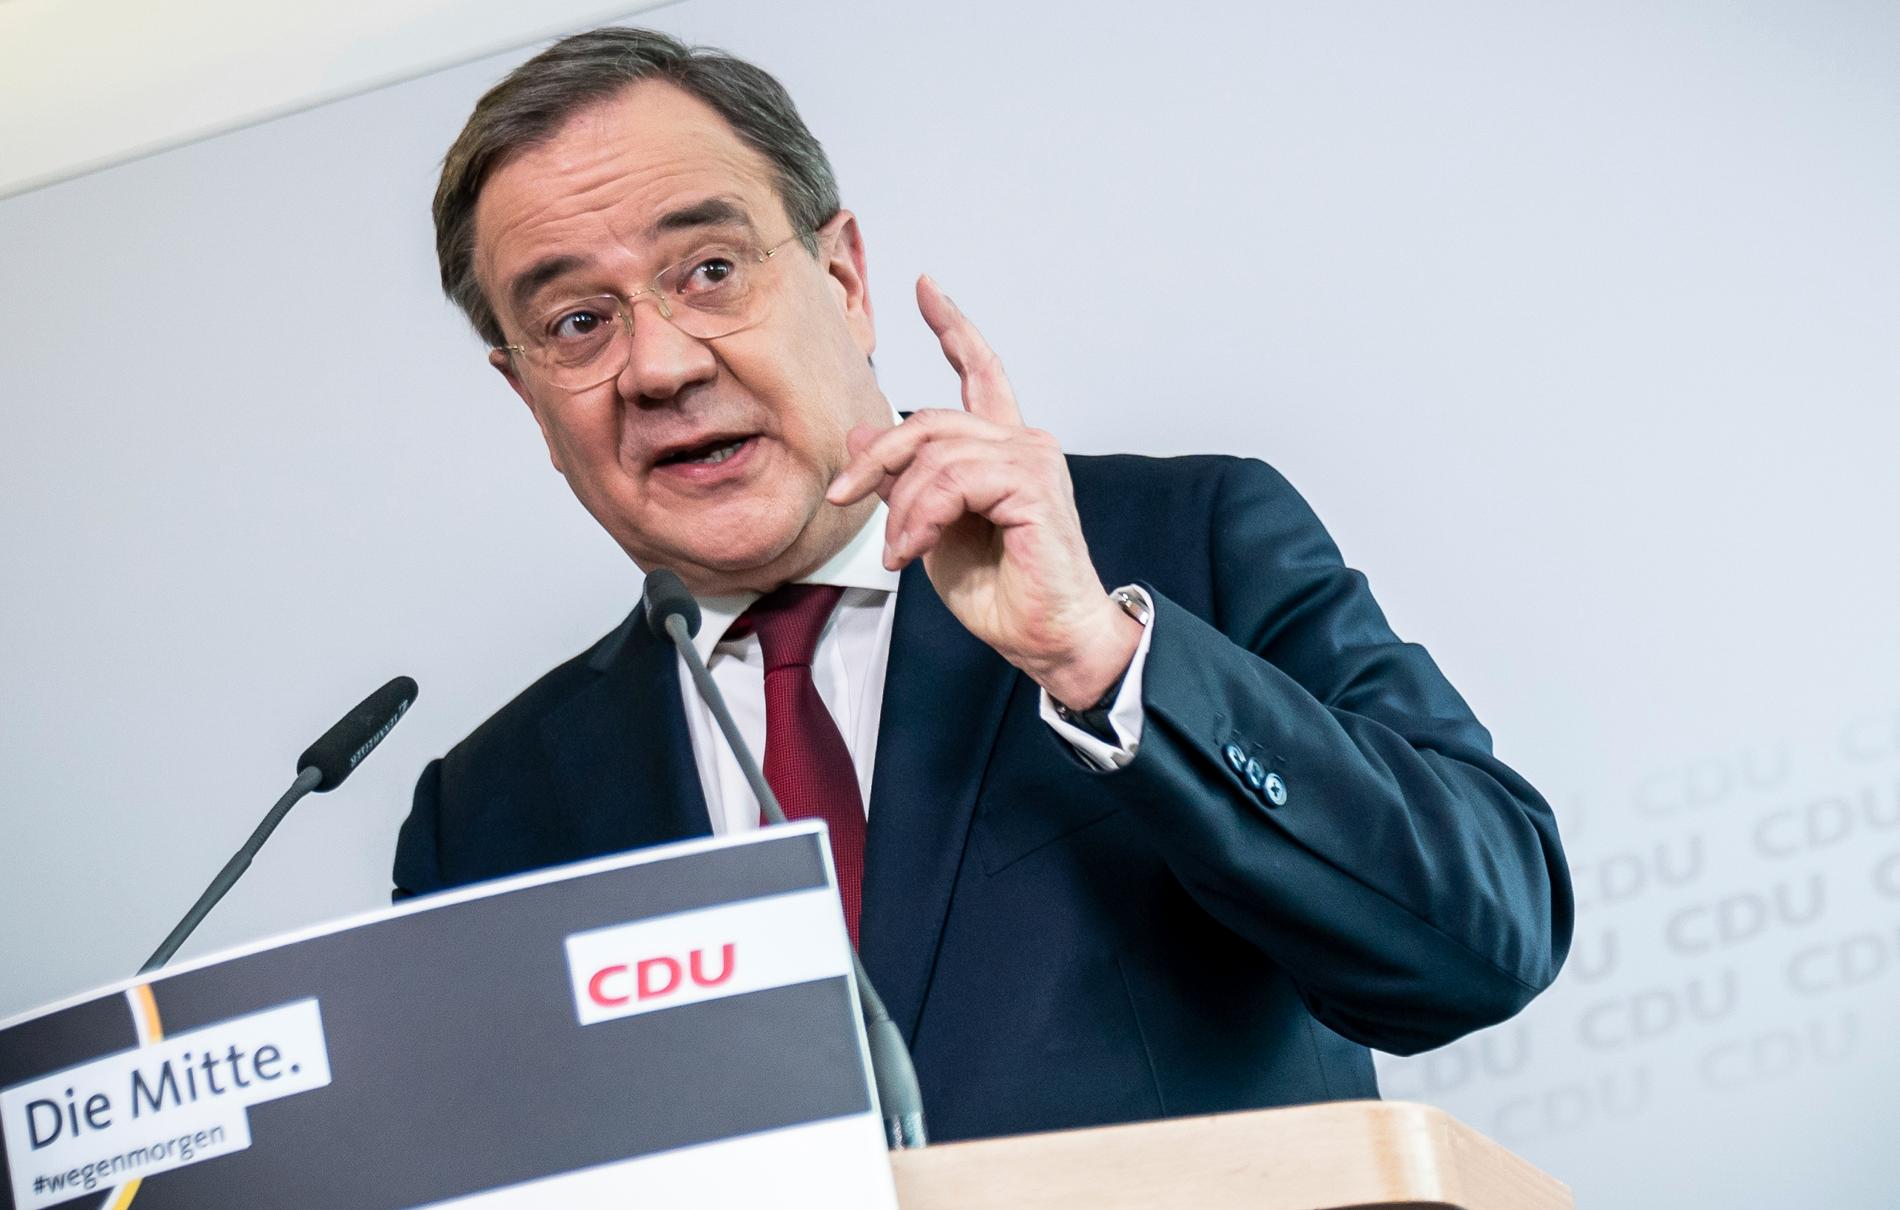 CDU-ledaren Armin Laschet.